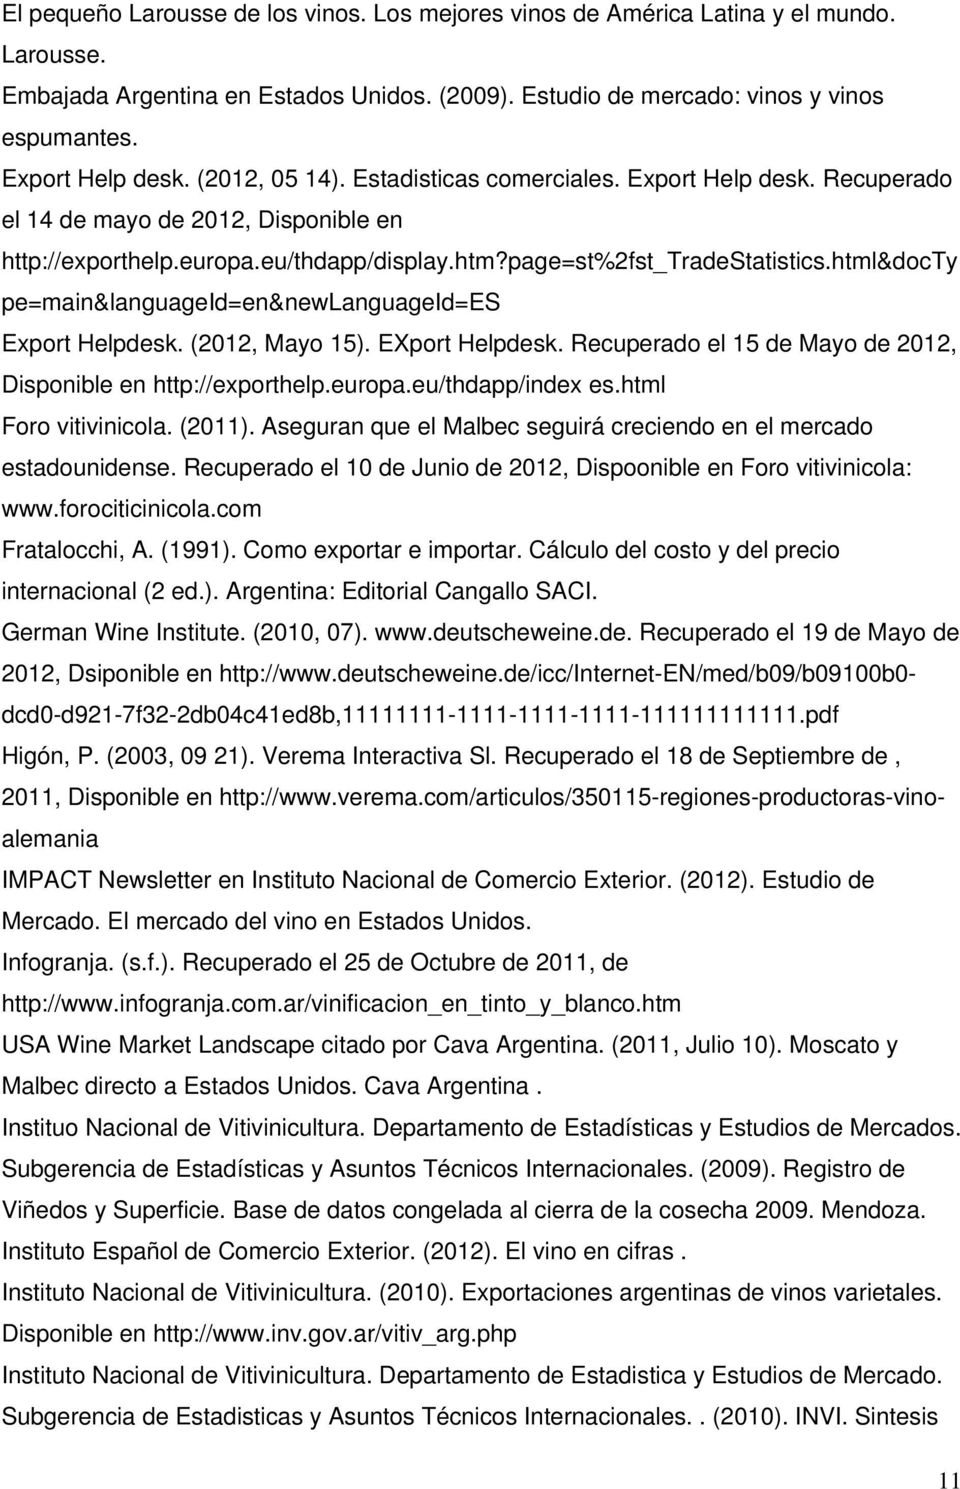 page=st%2fst_tradestatistics.html&docty pe=main&languageid=en&newlanguageid=es Export Helpdesk. (2012, Mayo 15). EXport Helpdesk. Recuperado el 15 de Mayo de 2012, Disponible en http://exporthelp.